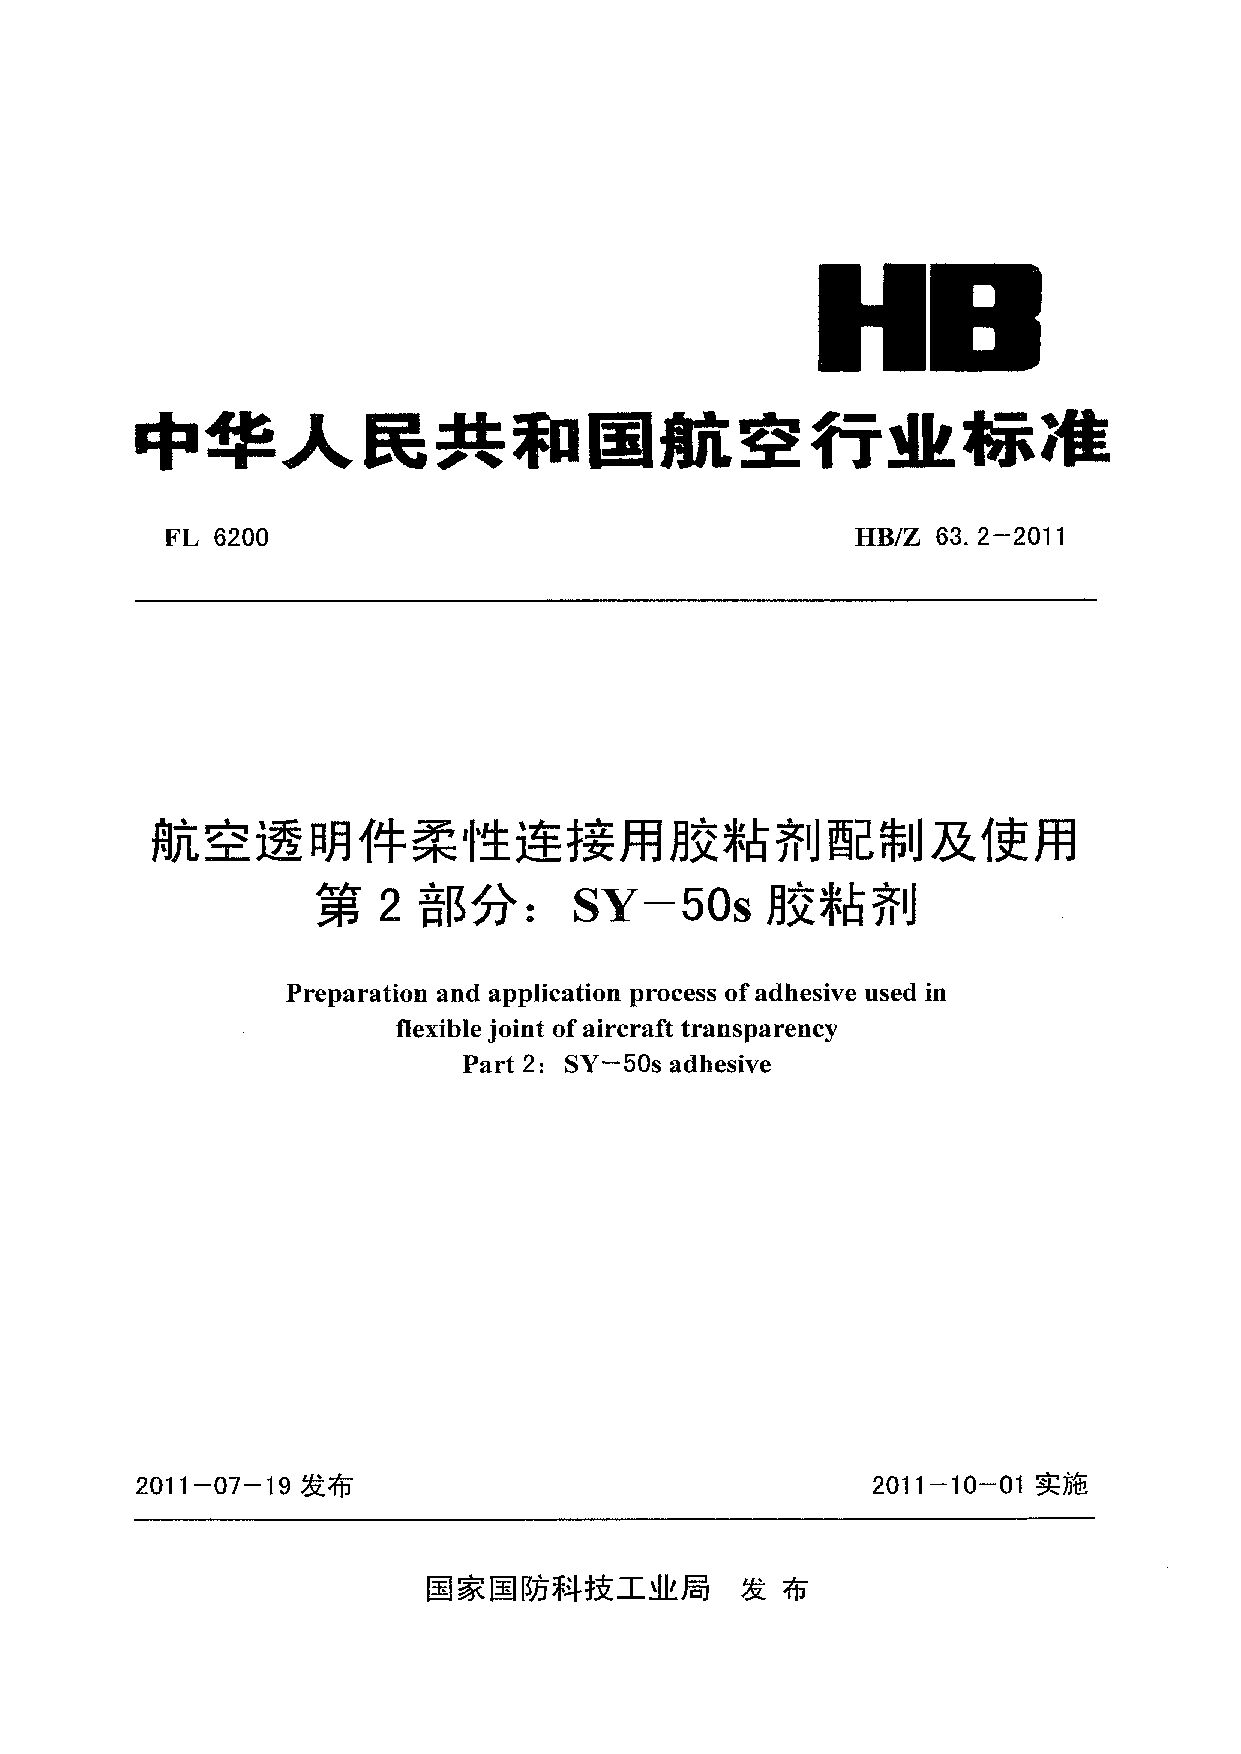 HB/Z 63.2-2011